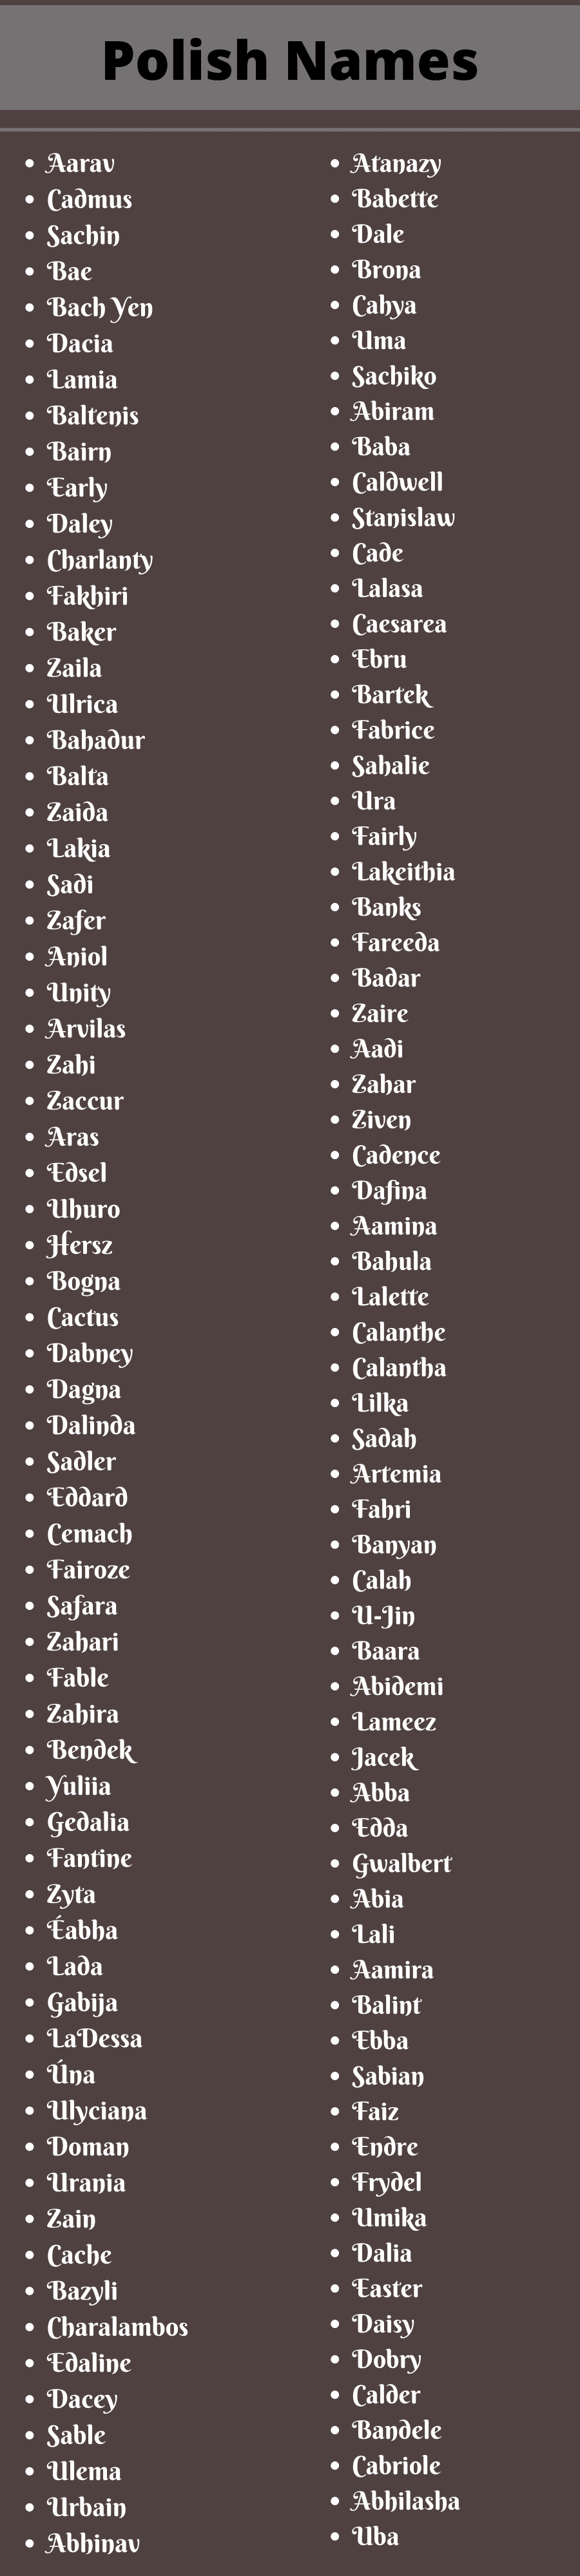 polish names 